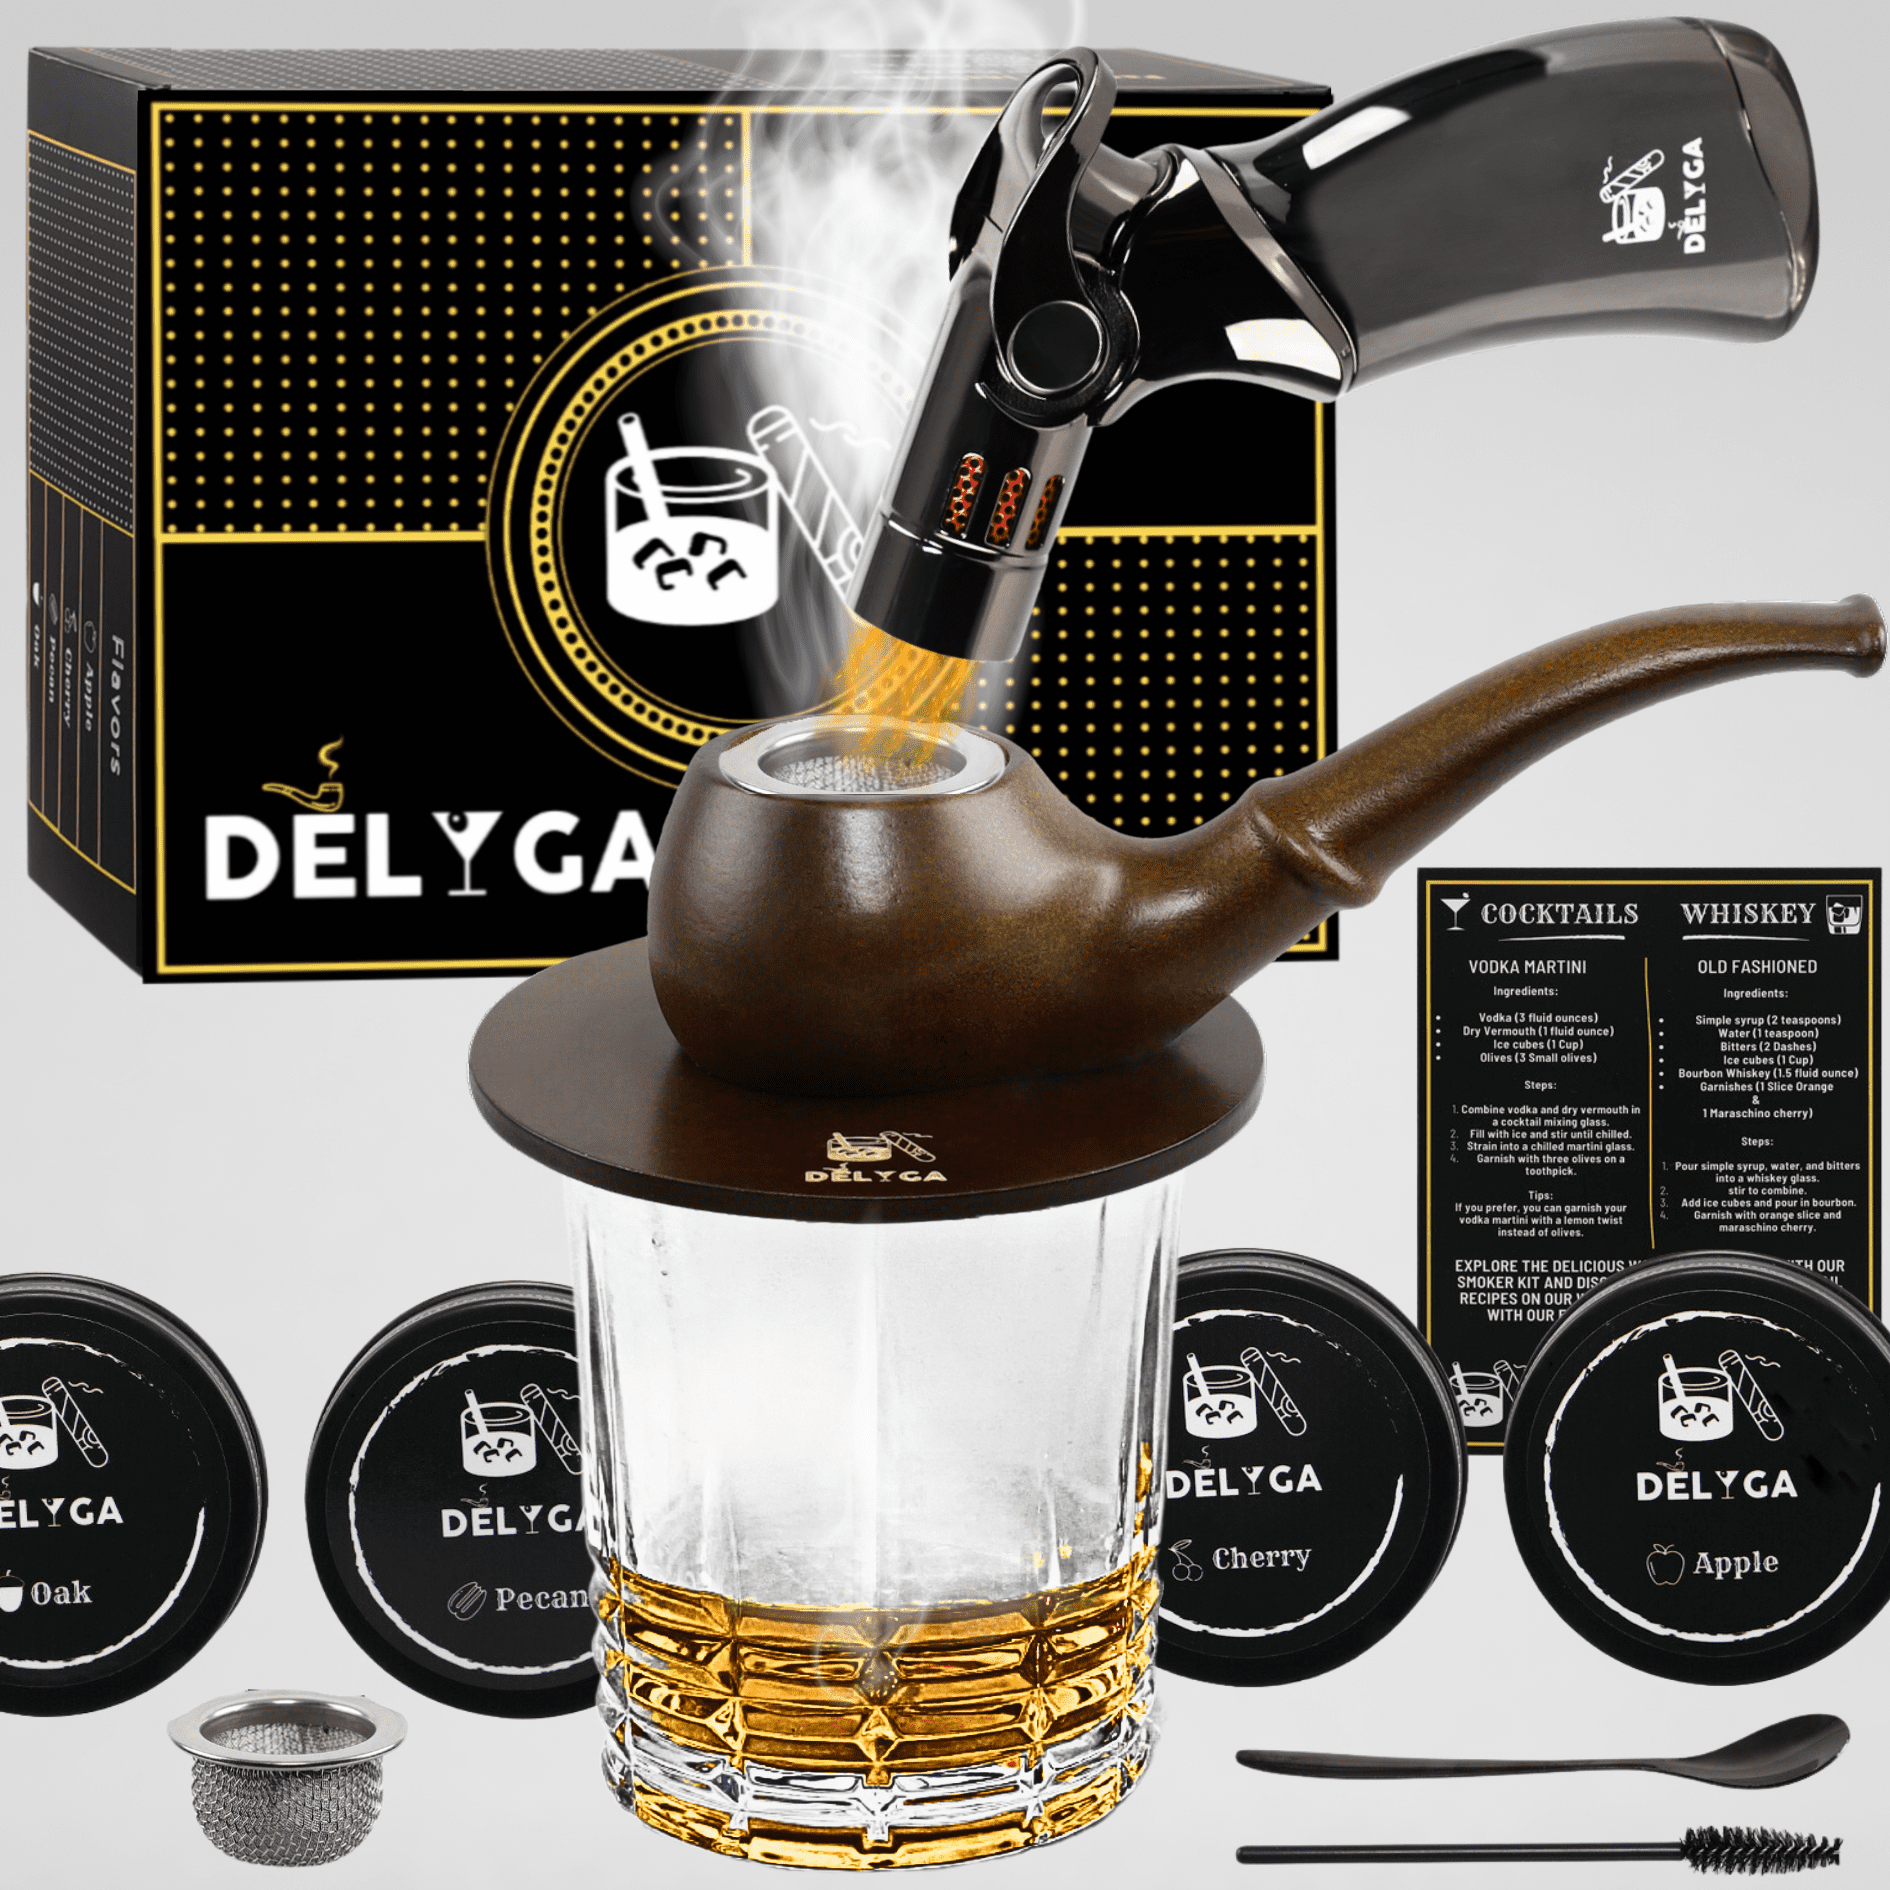 Cocktail Smoking Kit – WhiskeyMade